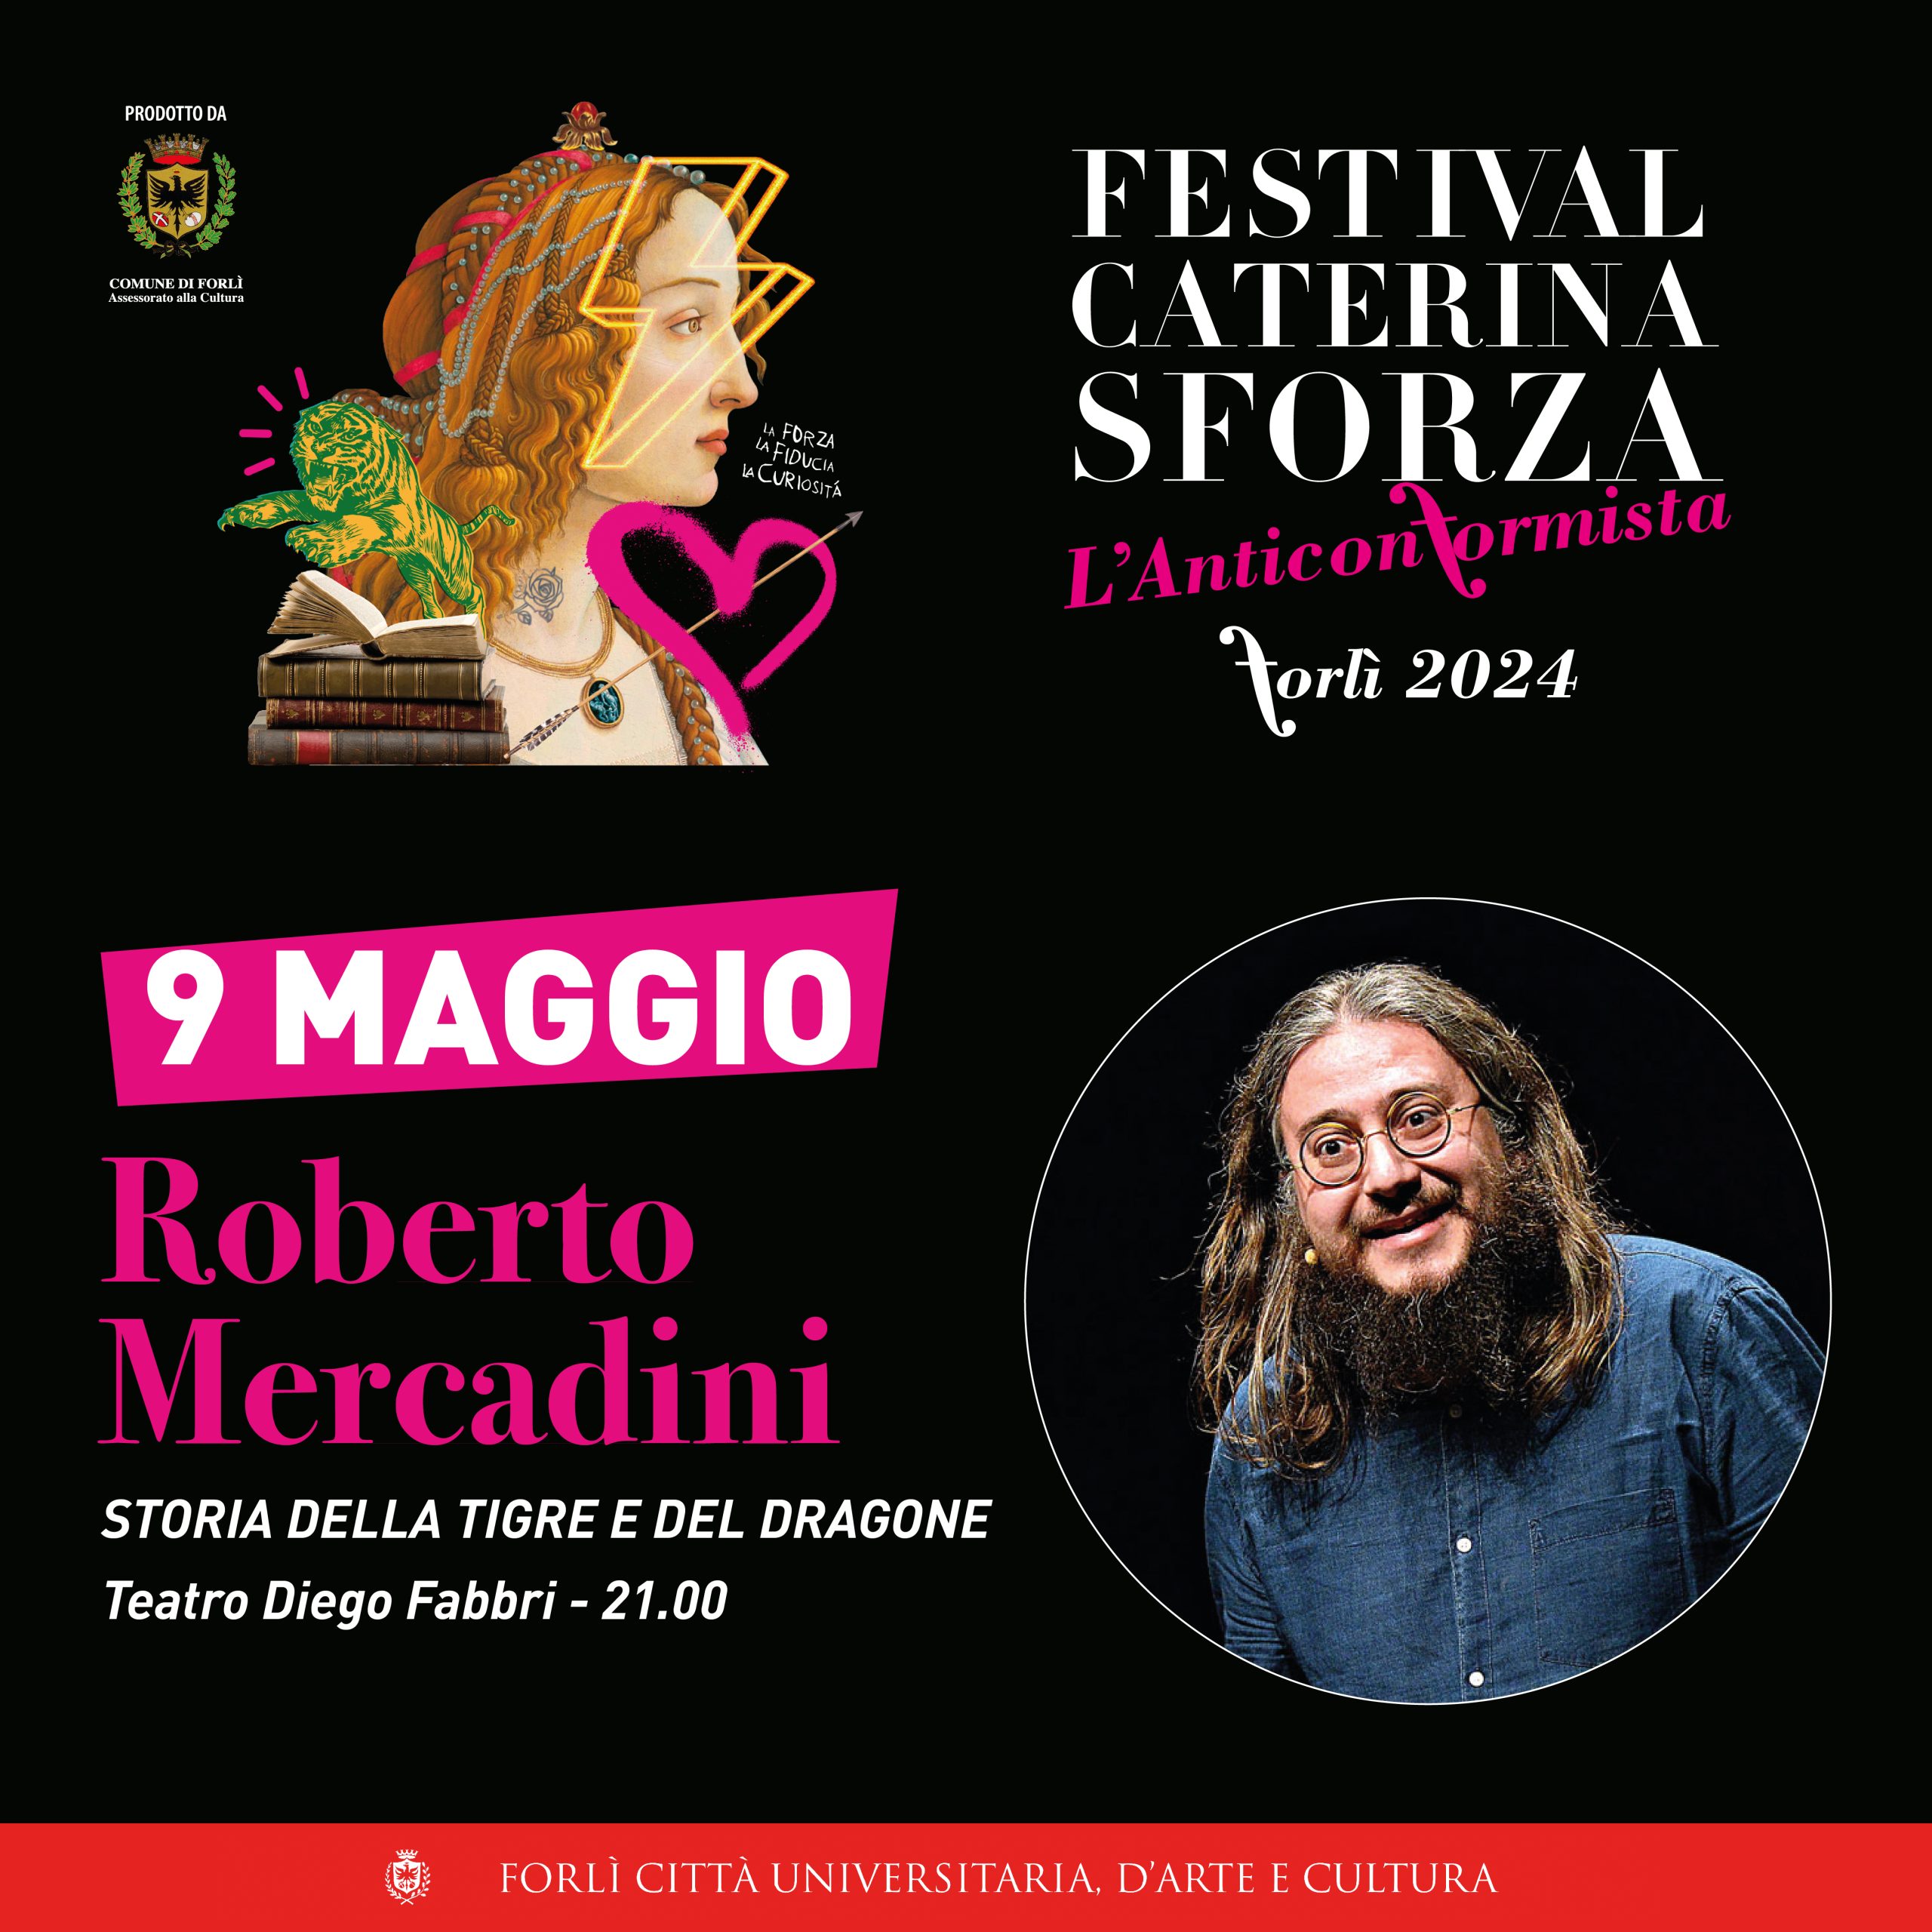 Festival Caterina Sforza